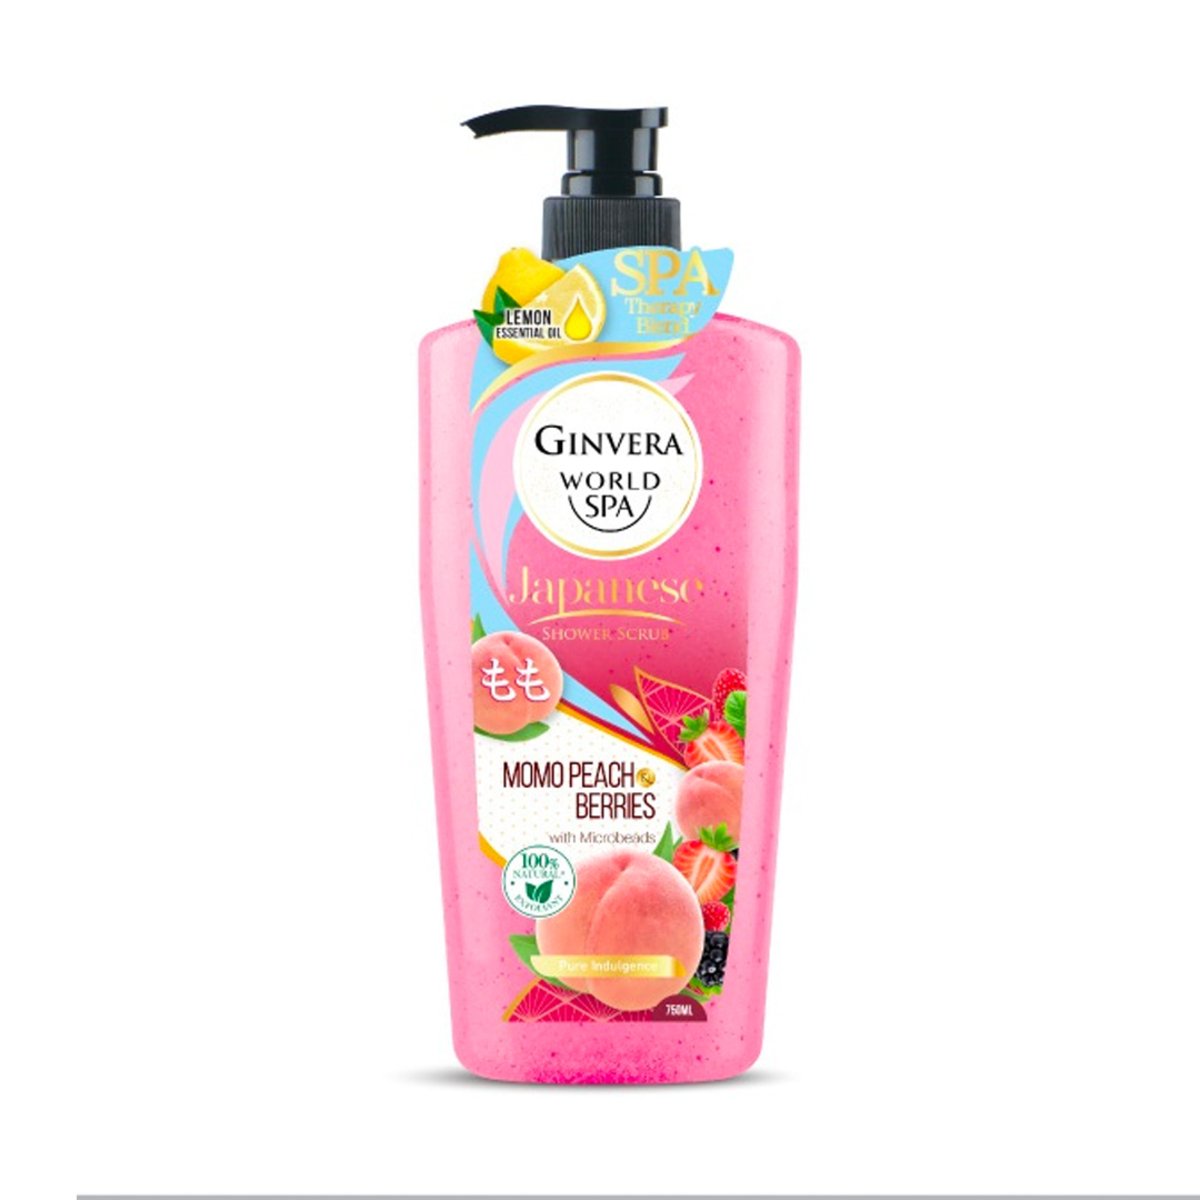 Ginvera Japanese Shower Scrub Momo Peach Berries 750ml